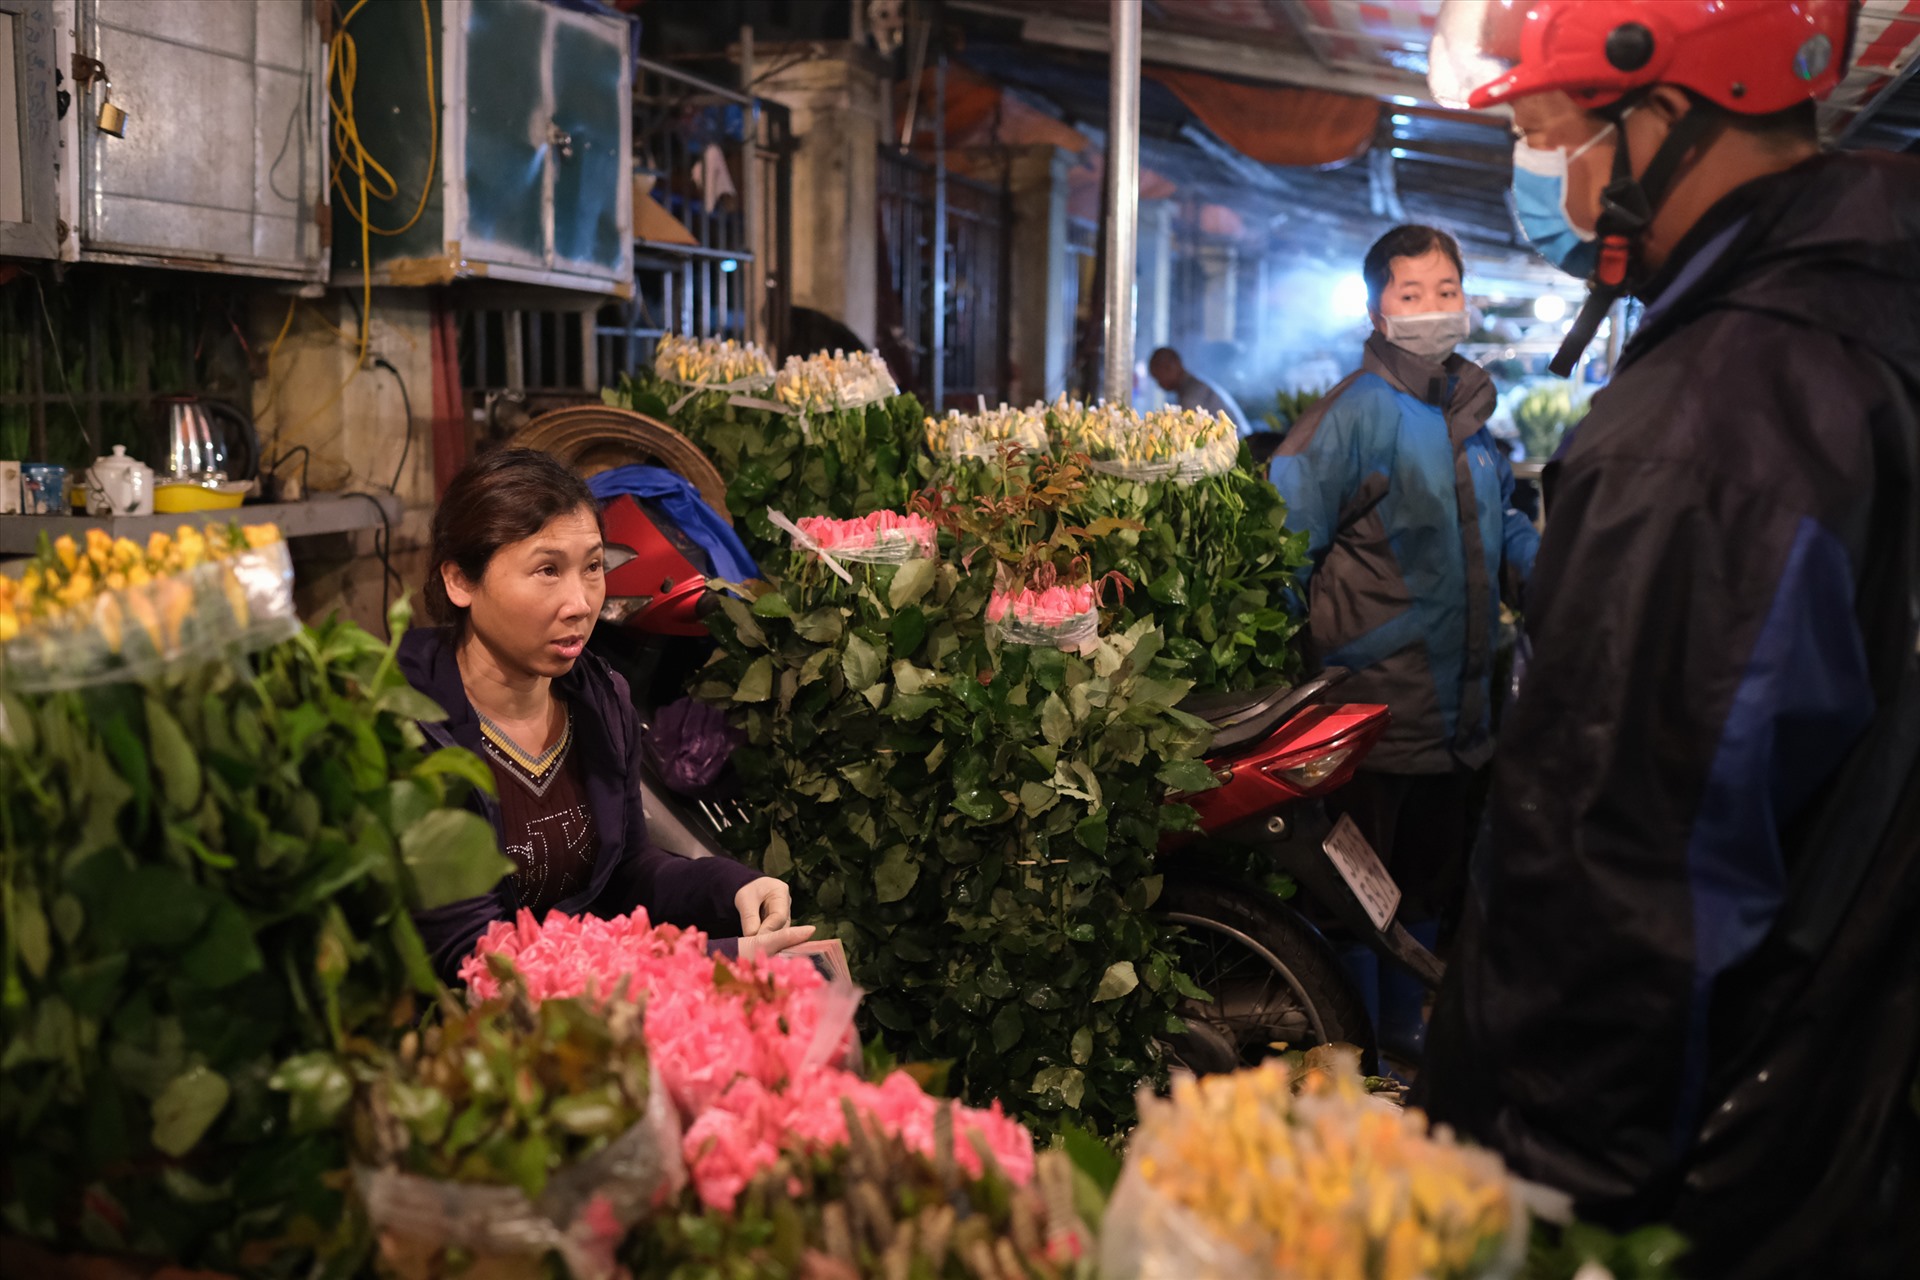 “Giờ có dịch nên chúng tôi đã giảm giá hoa rất nhiều so với thời gian trước. Hoa ly tai nhọn đã giảm giá từ 150 nghìn đồng xuống 70 nghìn đồng, thậm chí 50 nghìn đồng mà vẫn ế. Nhưng lượng hàng bán ra vẫn rất chậm“, chủ một cửa hàng bán hoa tại đây cho biết. Ảnh: Hoàng Việt